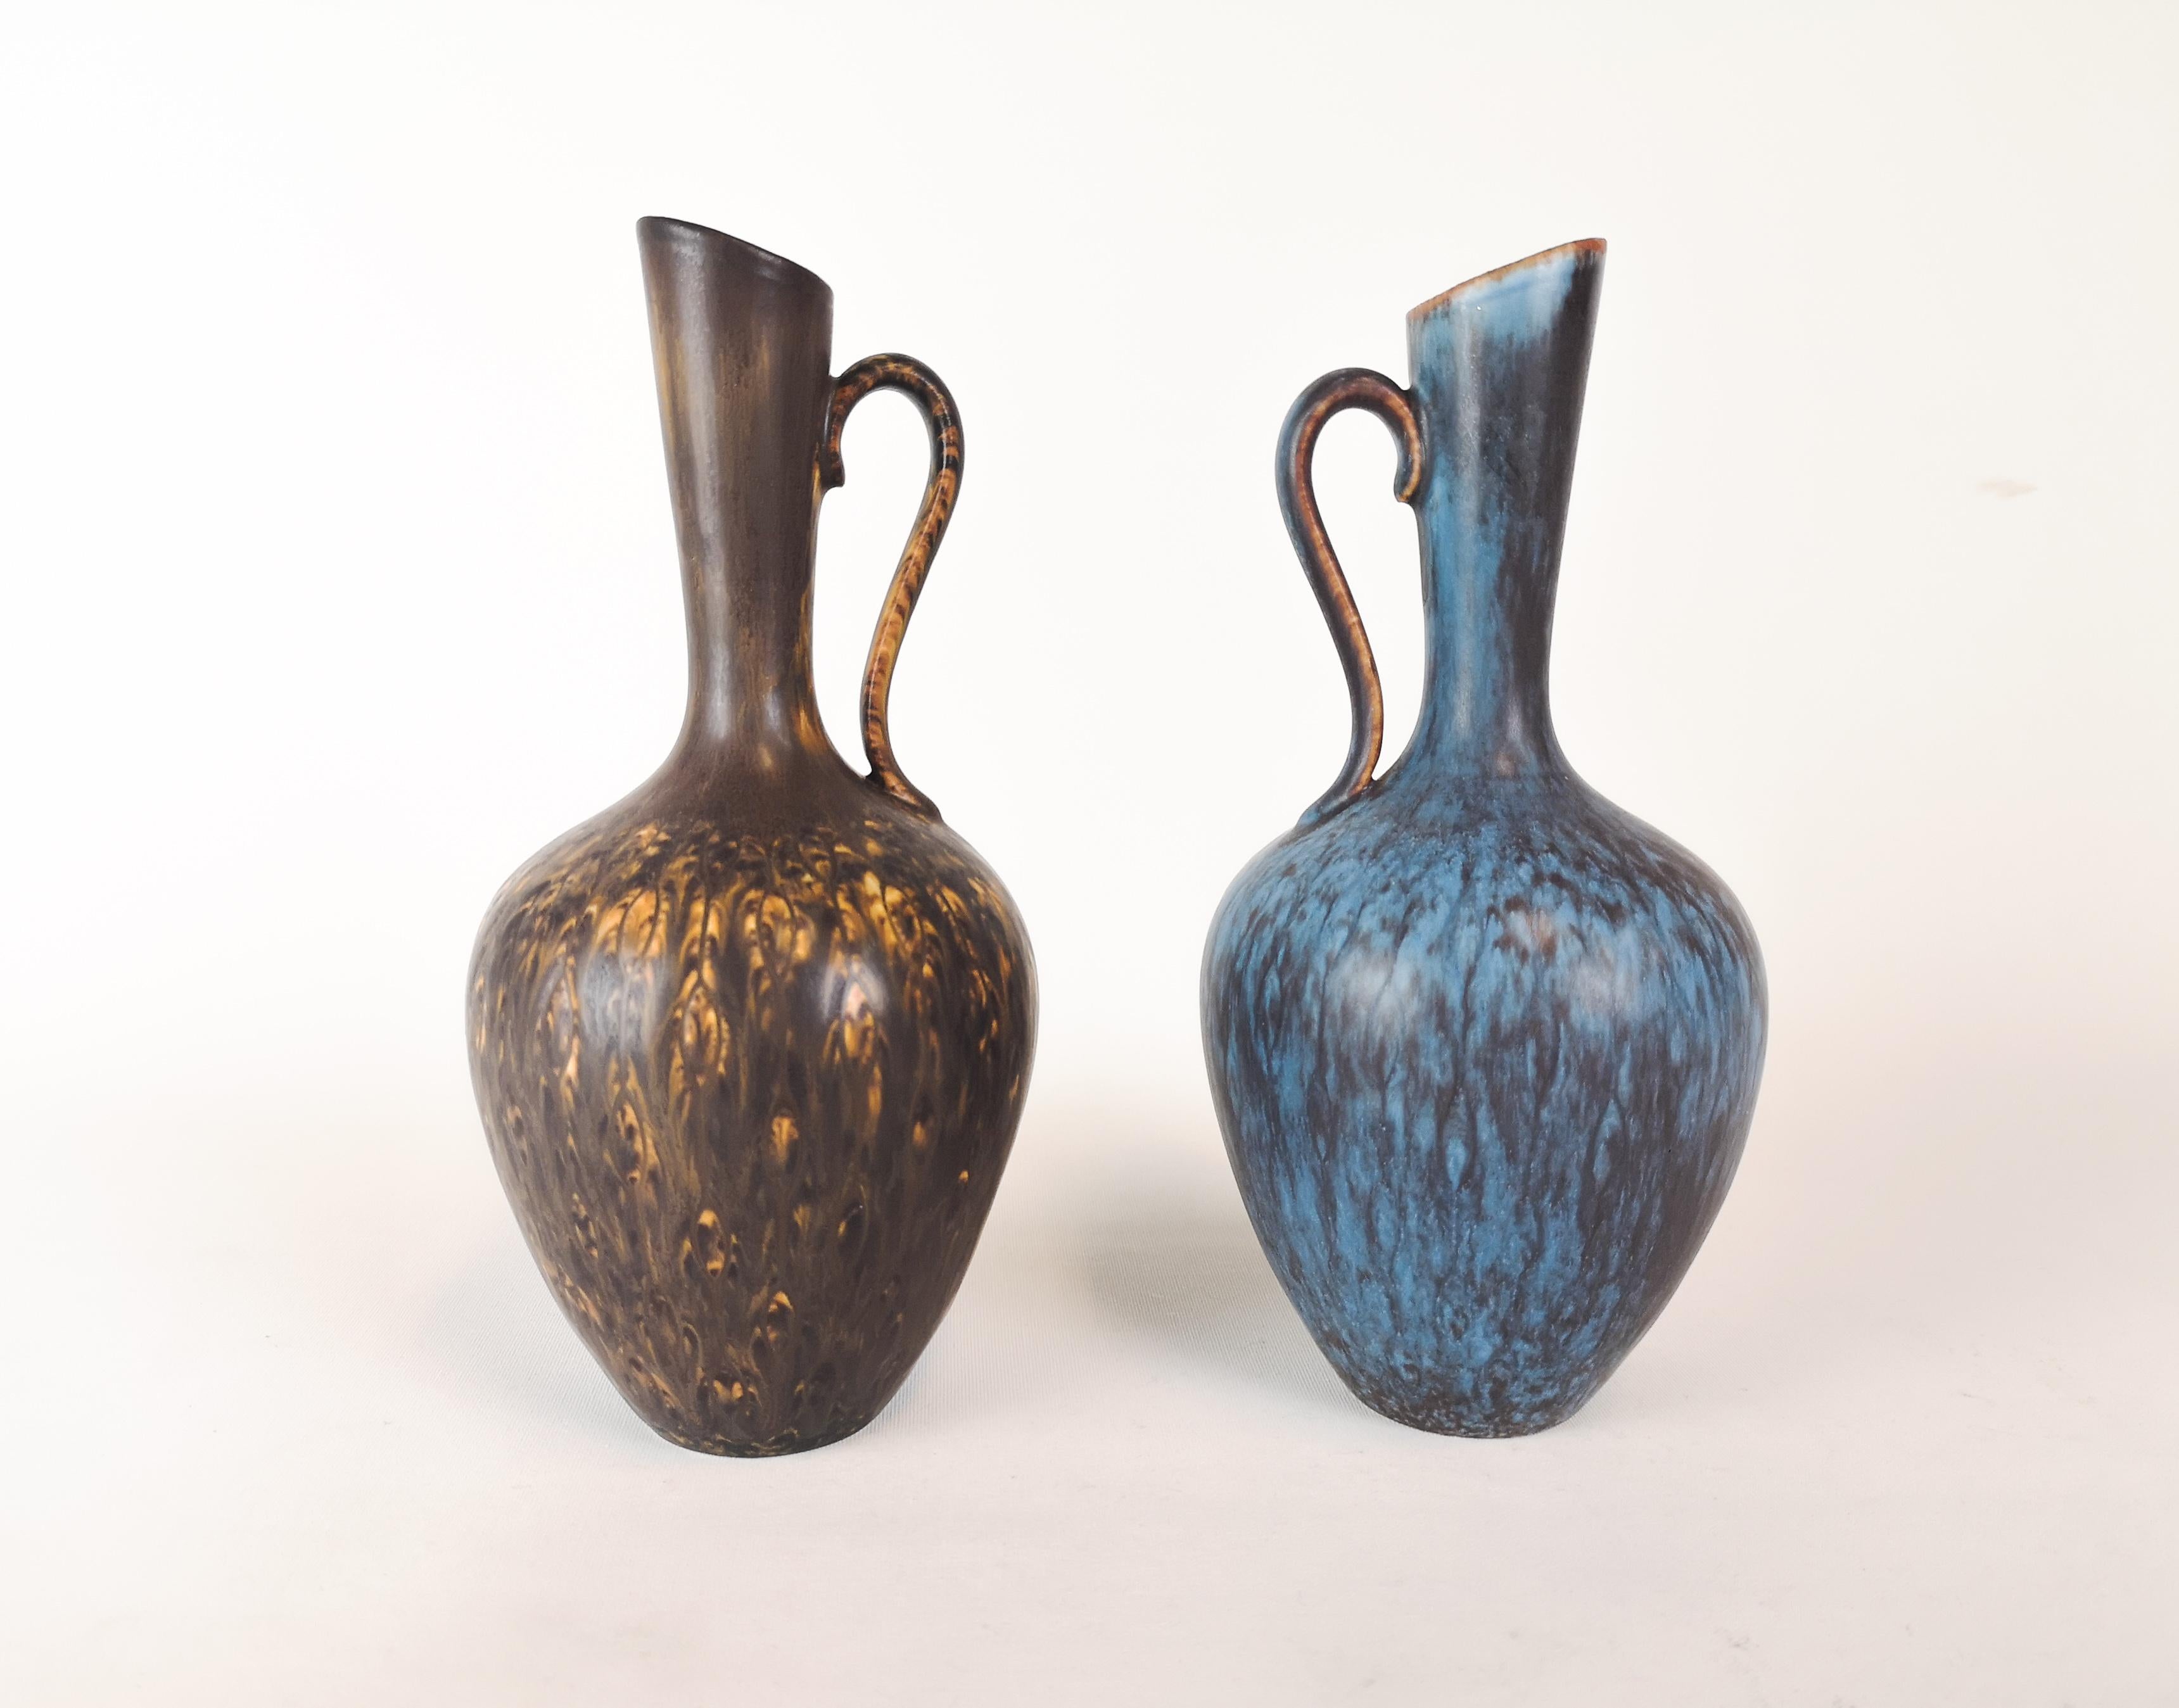 Deux magnifiques vases de Rörstrand et du créateur/désigner Gunnar Nylund. Fabriqué en Suède au milieu du siècle dernier. Beaux vases émaillés en bon état. 

Mesure H 23 x L 12 cm.